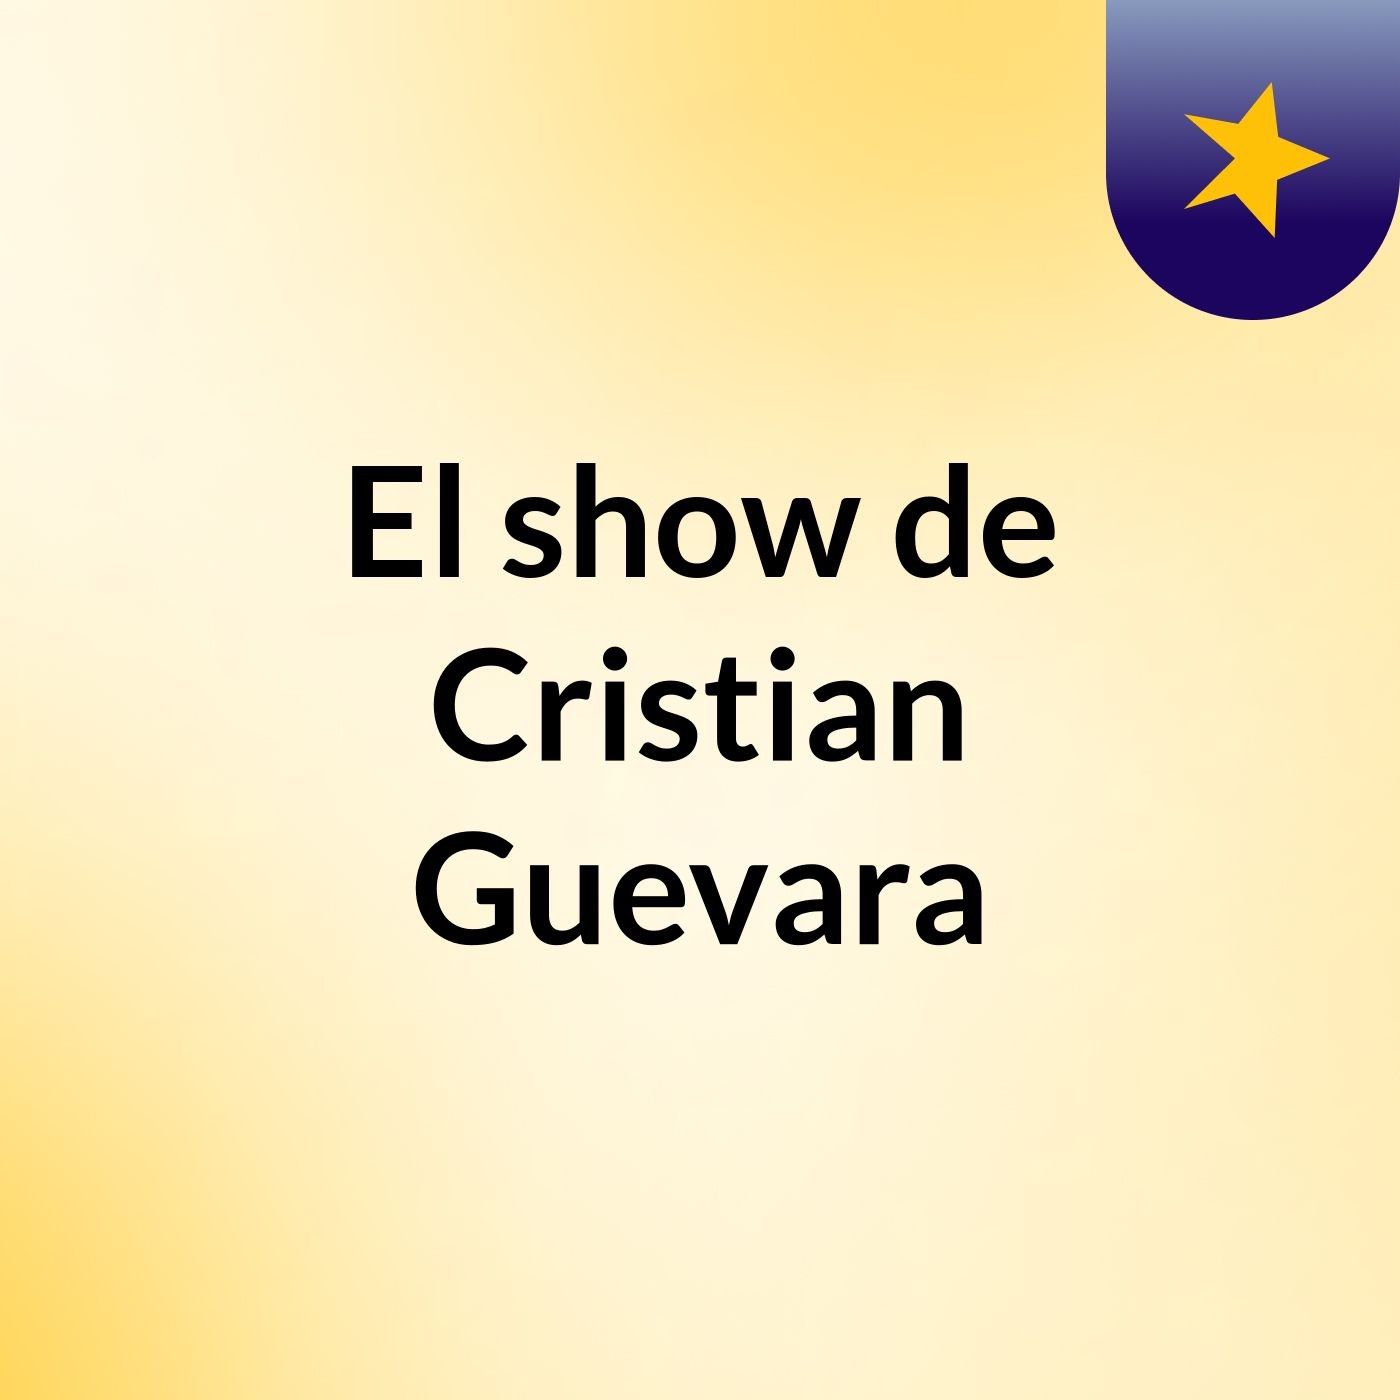 El show de Cristian Guevara